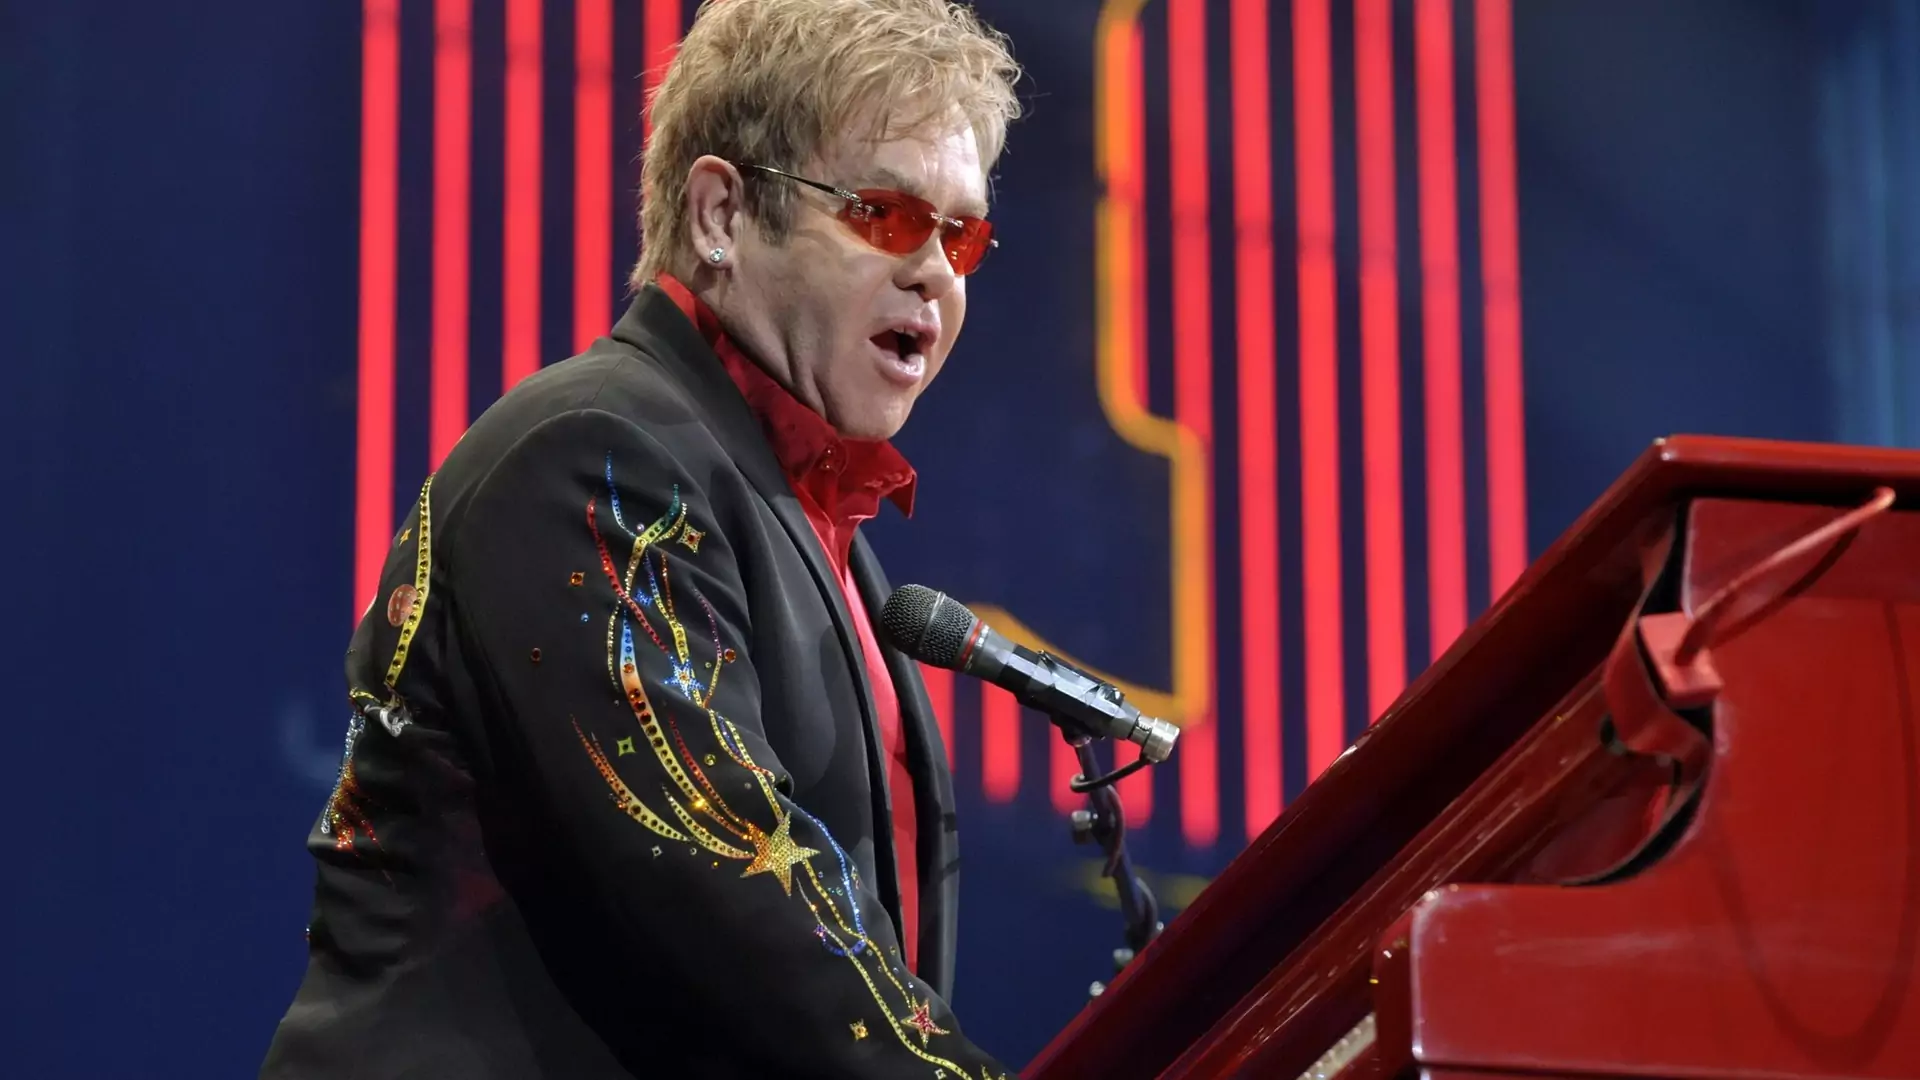 Elton John wspomina Mac Millera podczas koncertu i dedykuje mu piosenkę